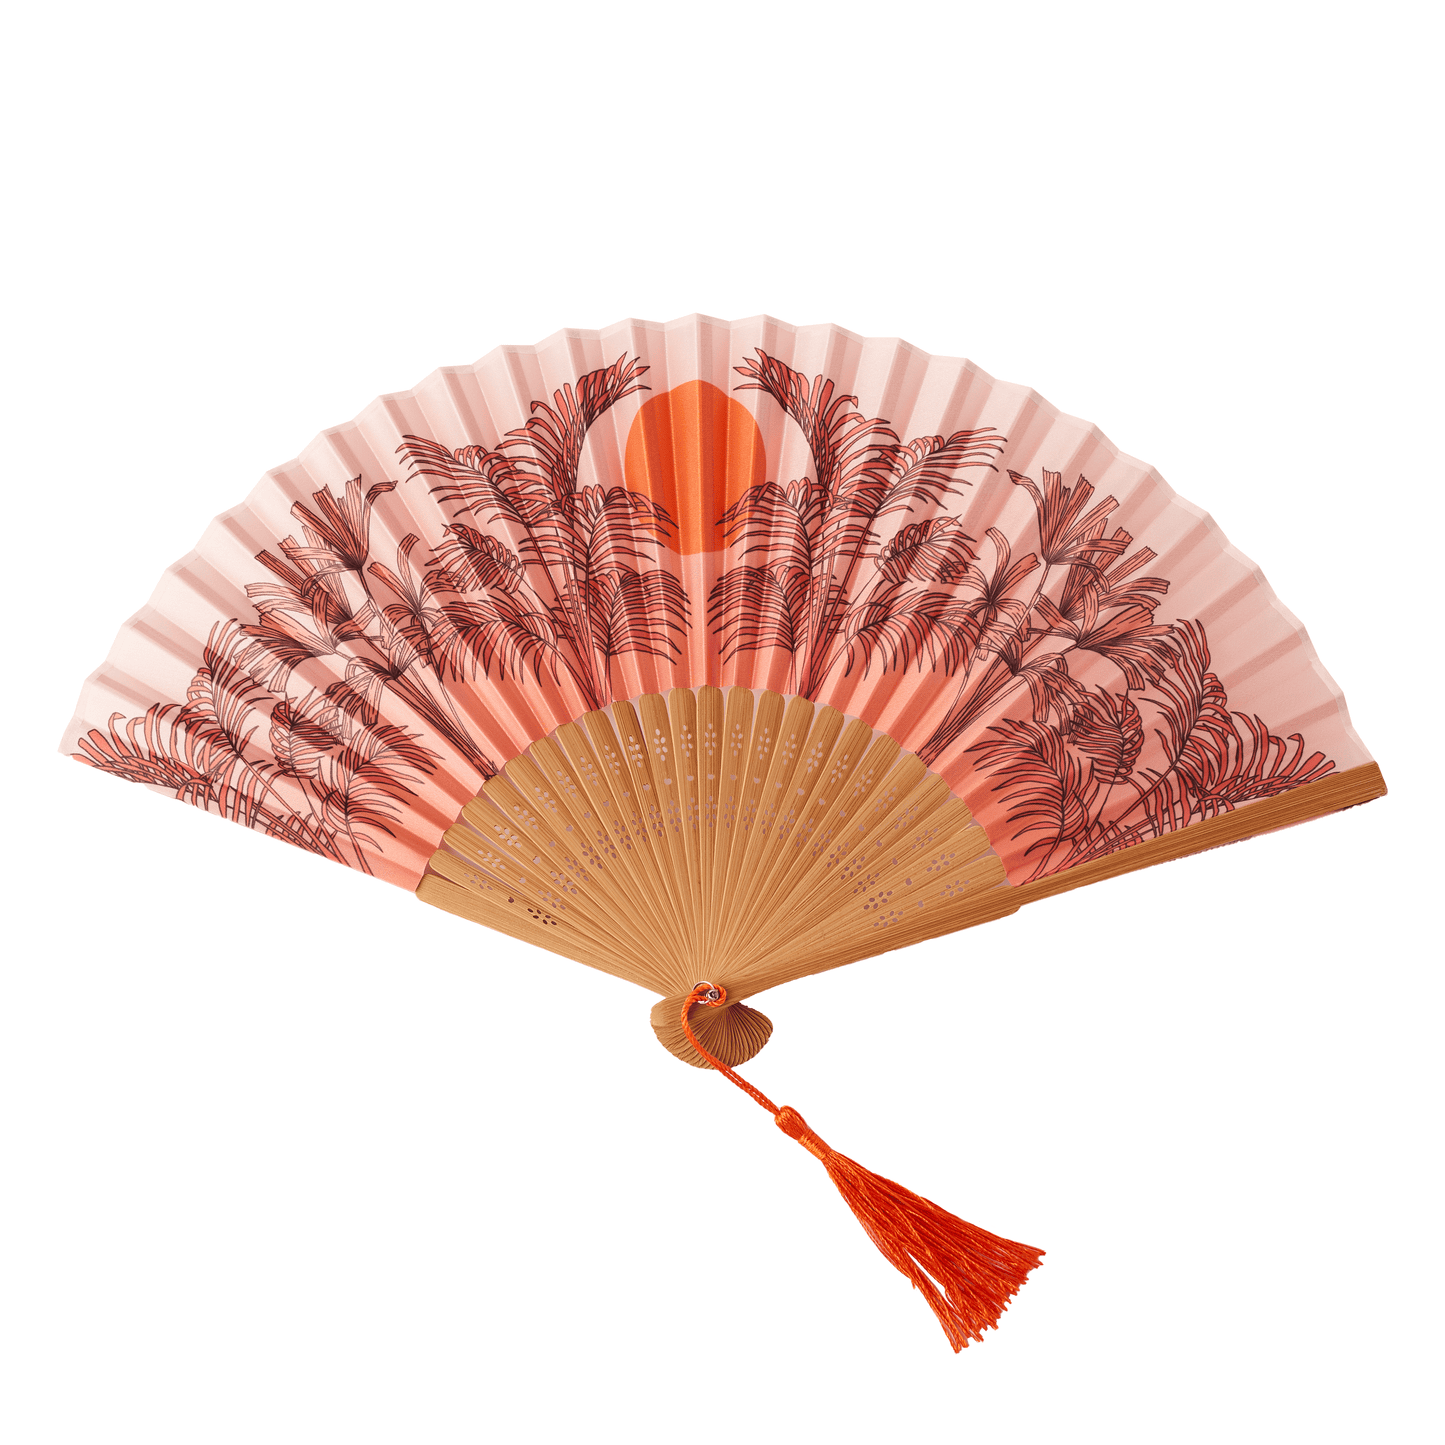 Small Folding Fan in Peachy Orange